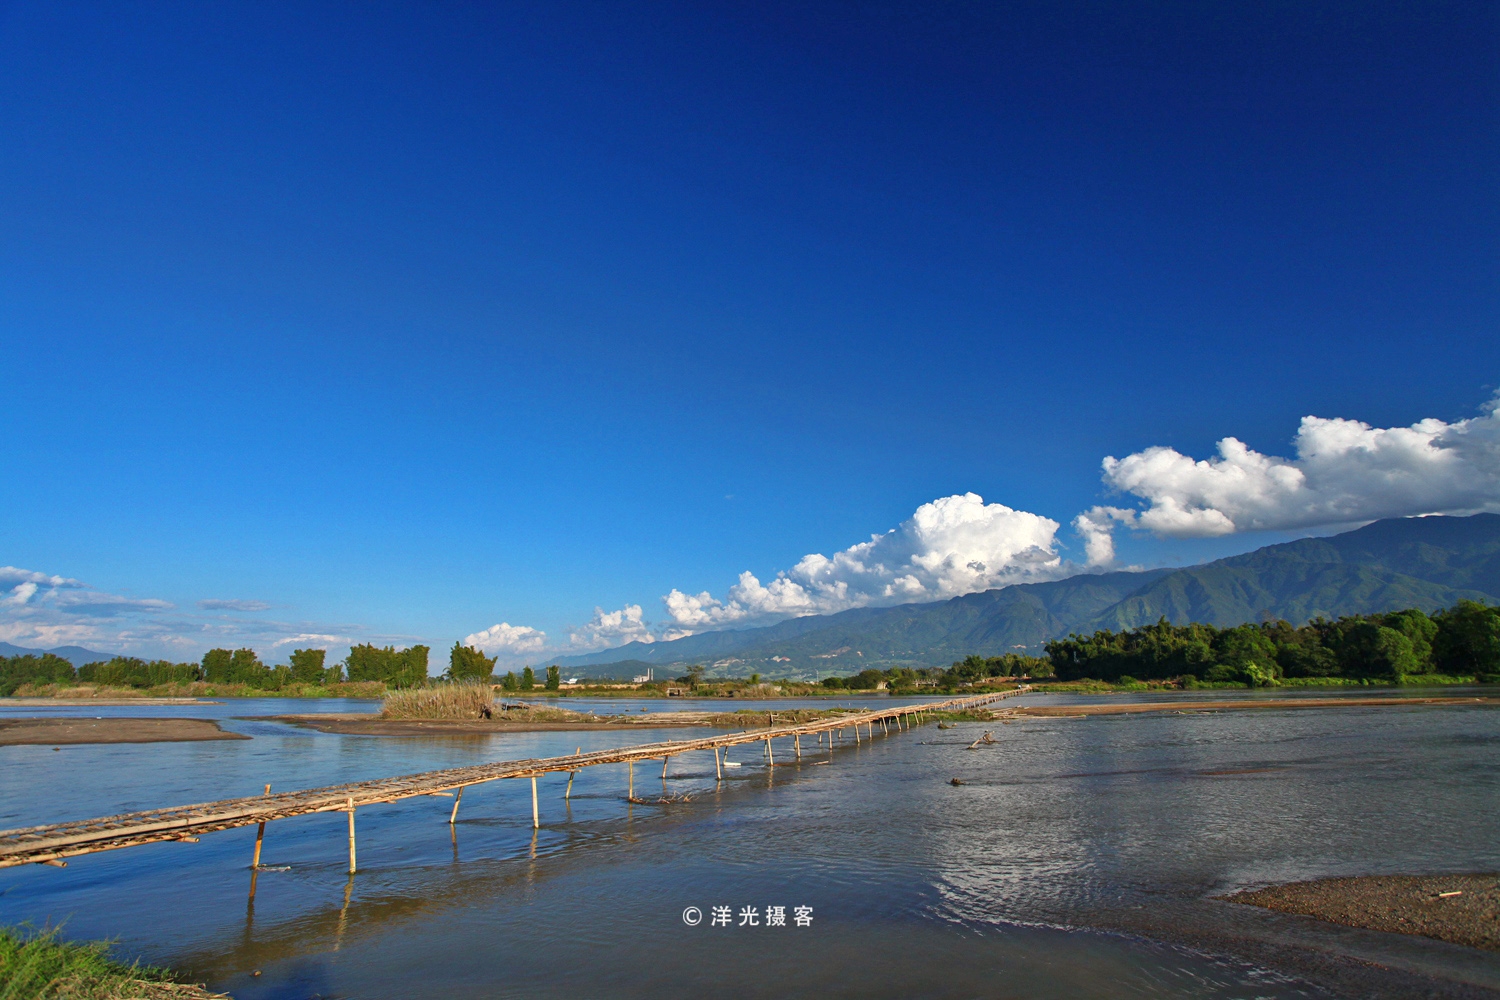 原生态的傣家竹桥横跨在芦苇花盛放的大盈江上